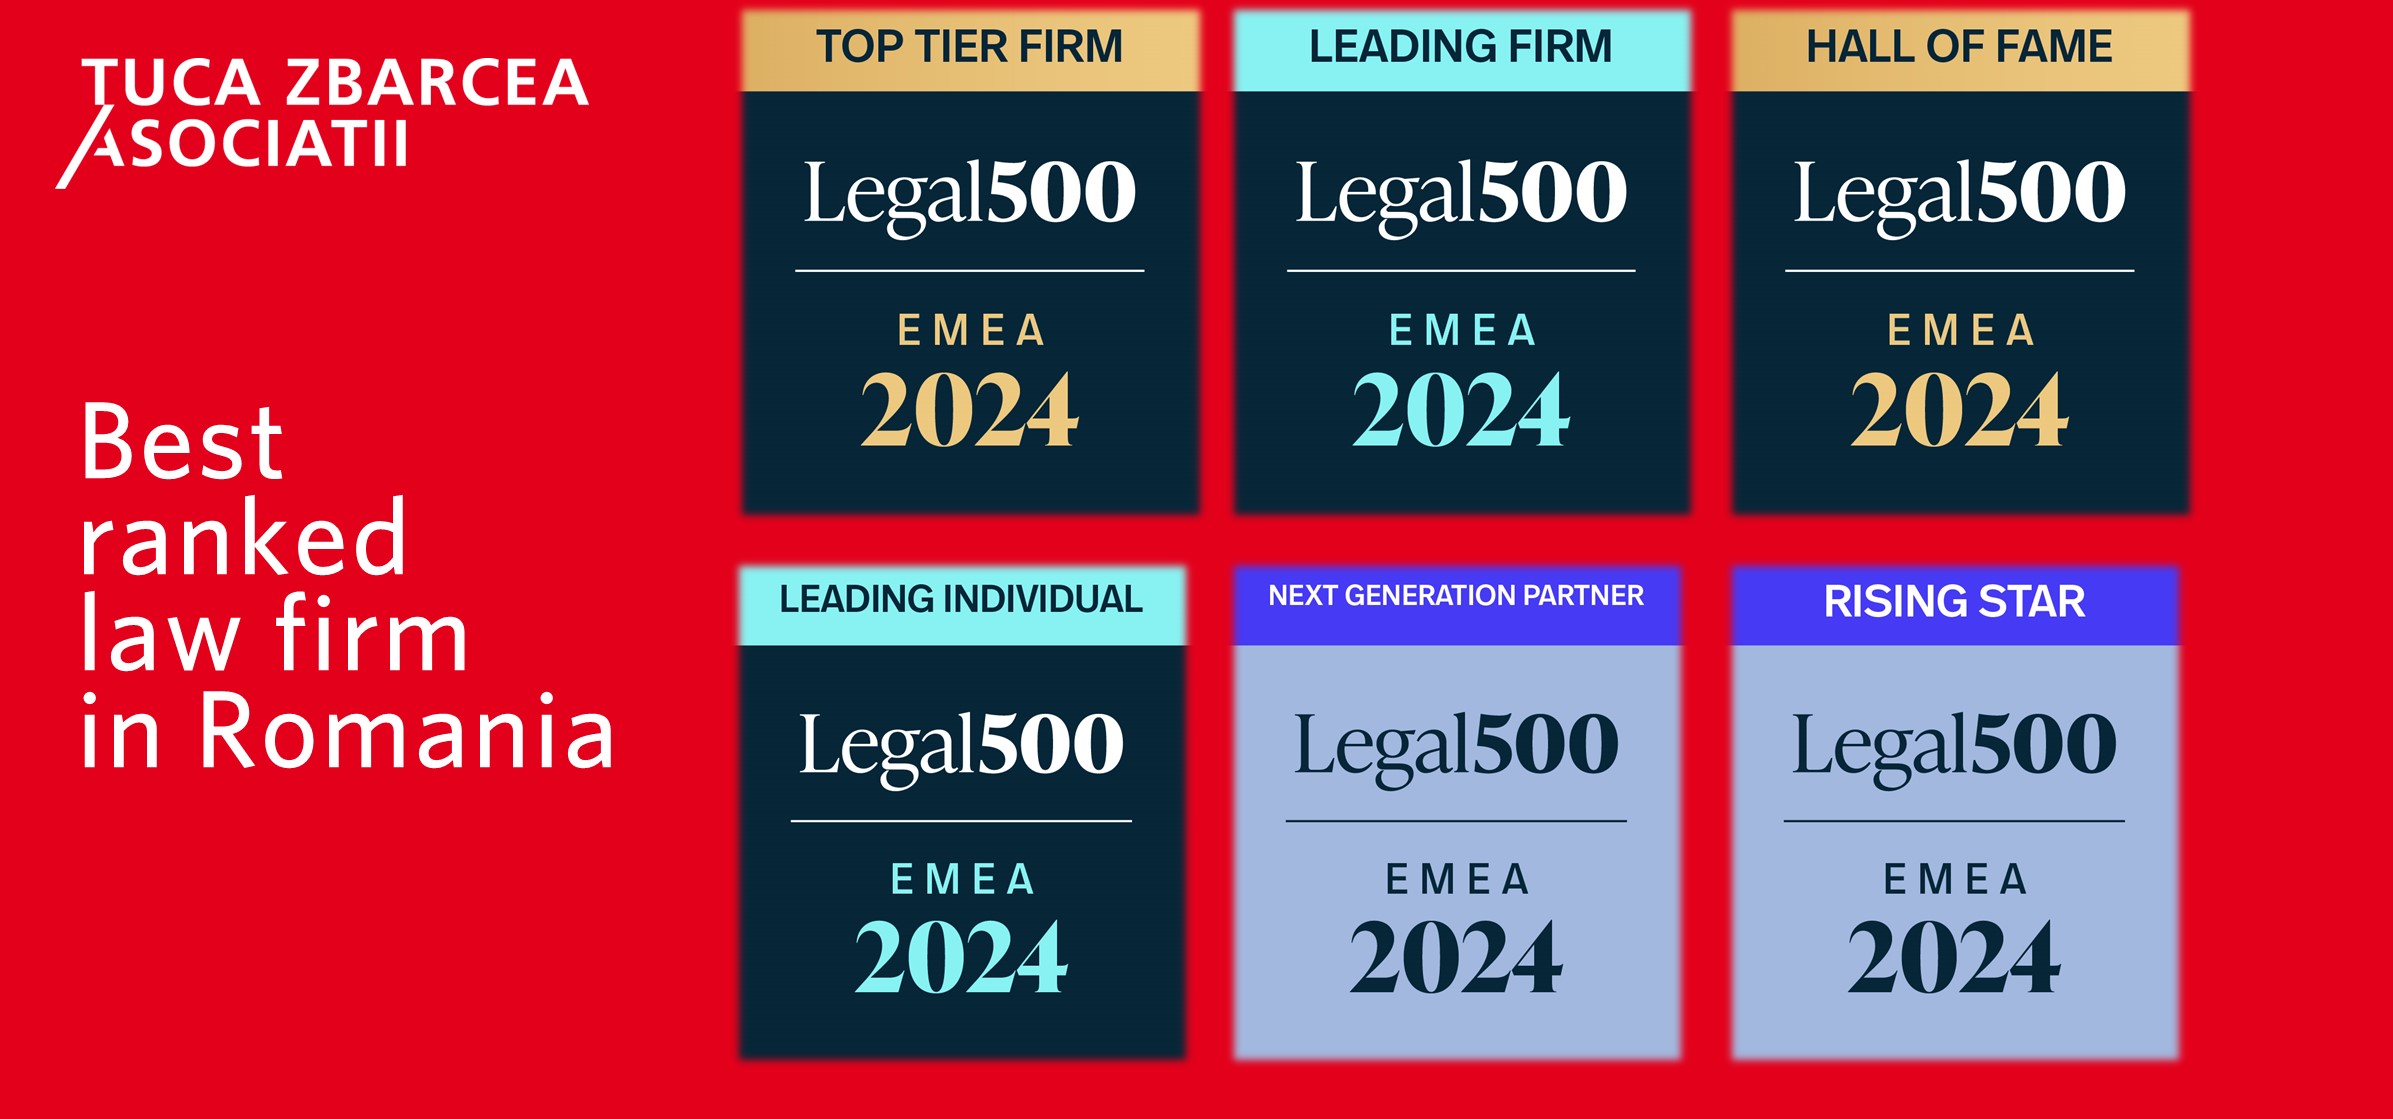 Țuca Zbârcea & Asociații rămâne cea mai bine cotată casă de avocatură din România în directorul Legal 500, ediția 2024